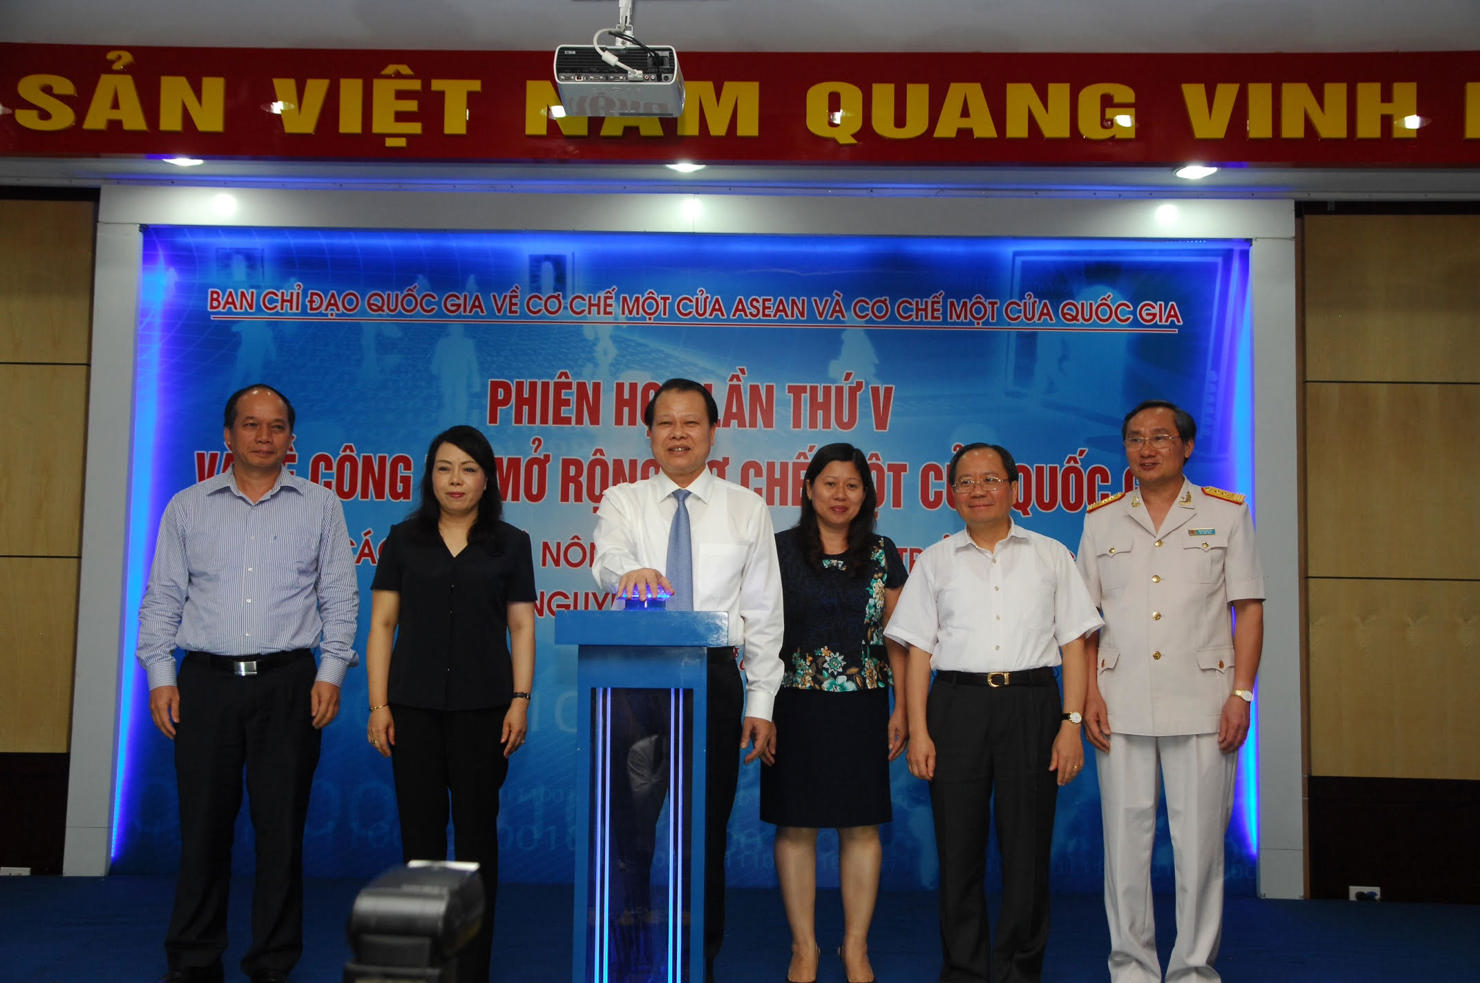 Phó Thủ tướng Vũ Văn Ninh nhấn nút công bố mở rộng cơ chế một cửa quốc gia với 3 Bộ Y tế, Tài nguyên và Môi trường, Phát triển và Nông thôn. 